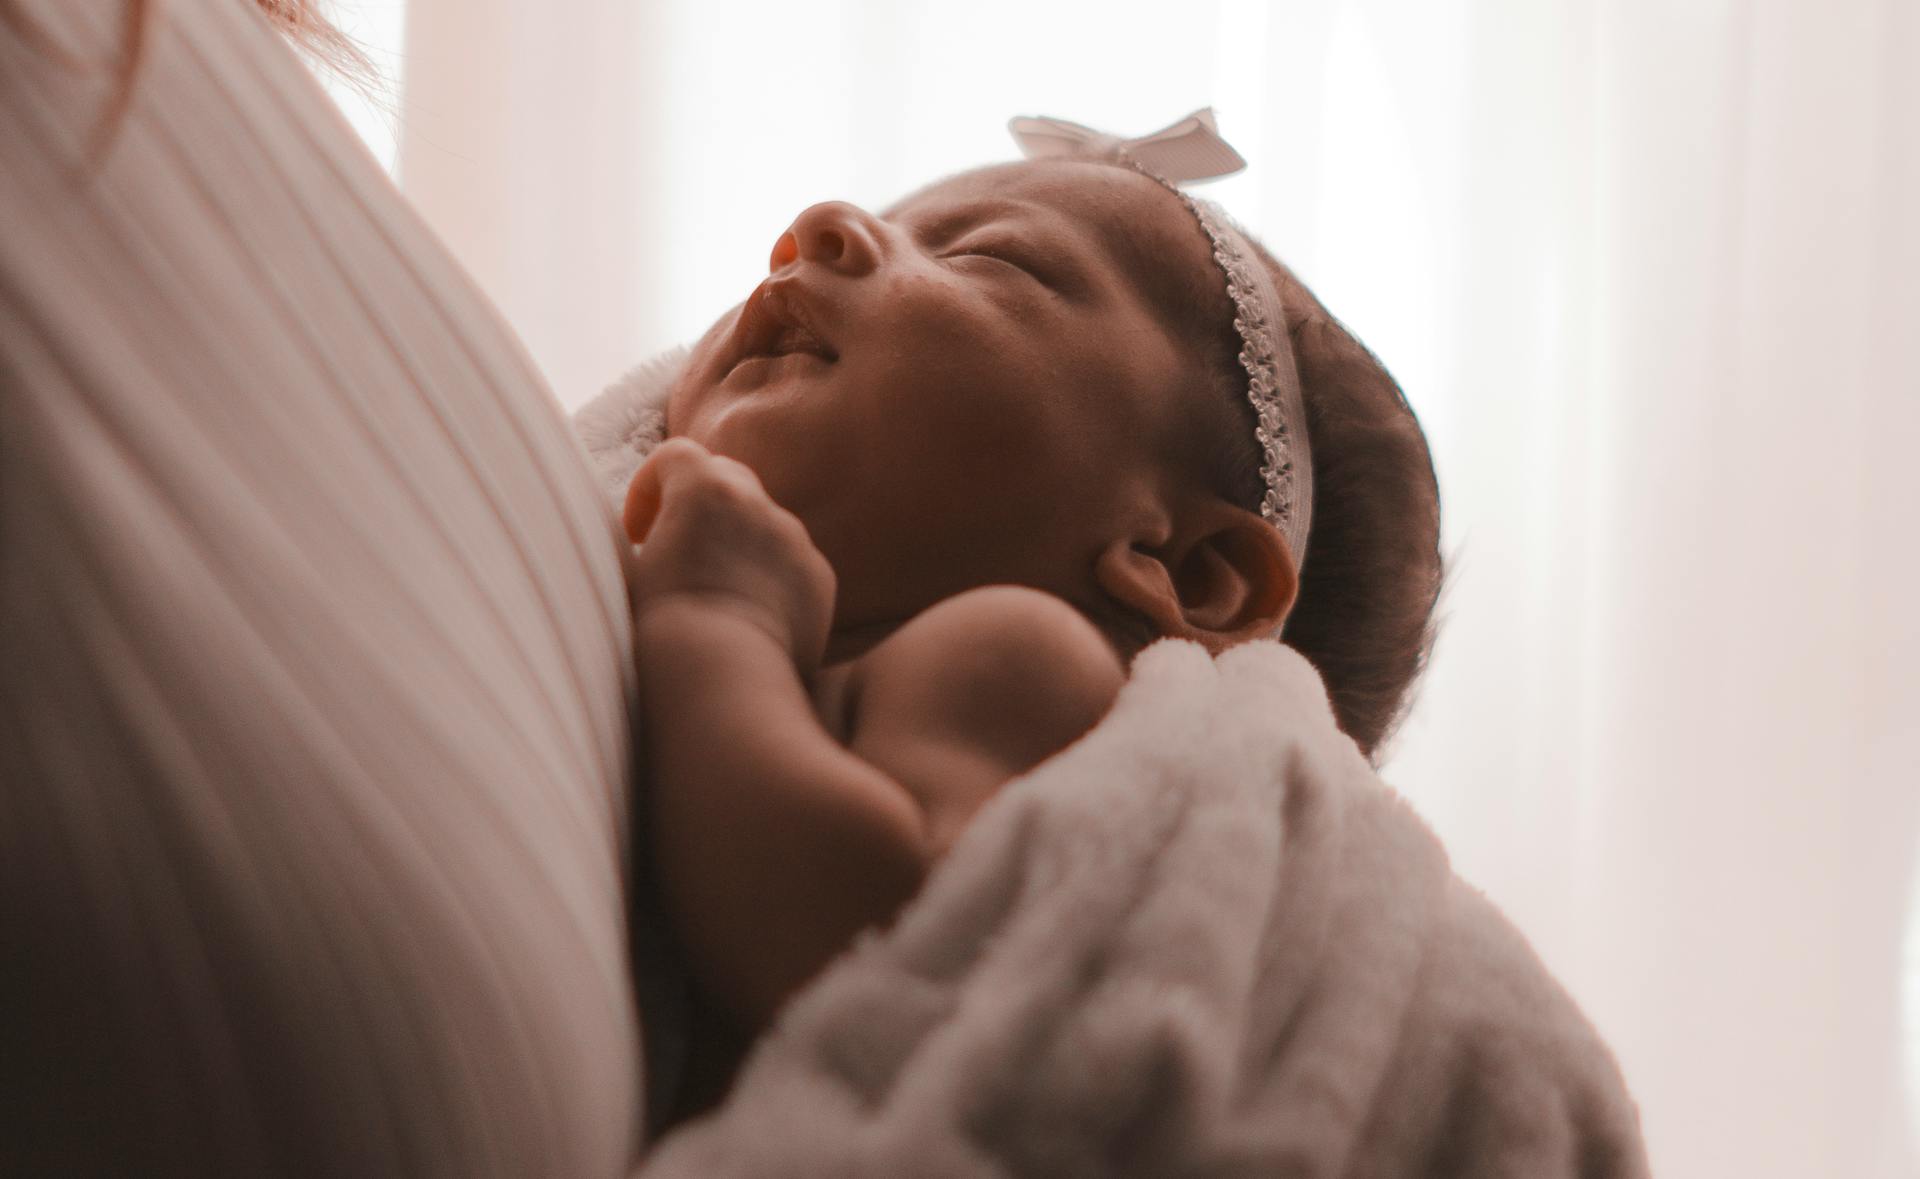 Persona con un bebé en brazos. Imagen con fines ilustrativos | Foto: Pexels